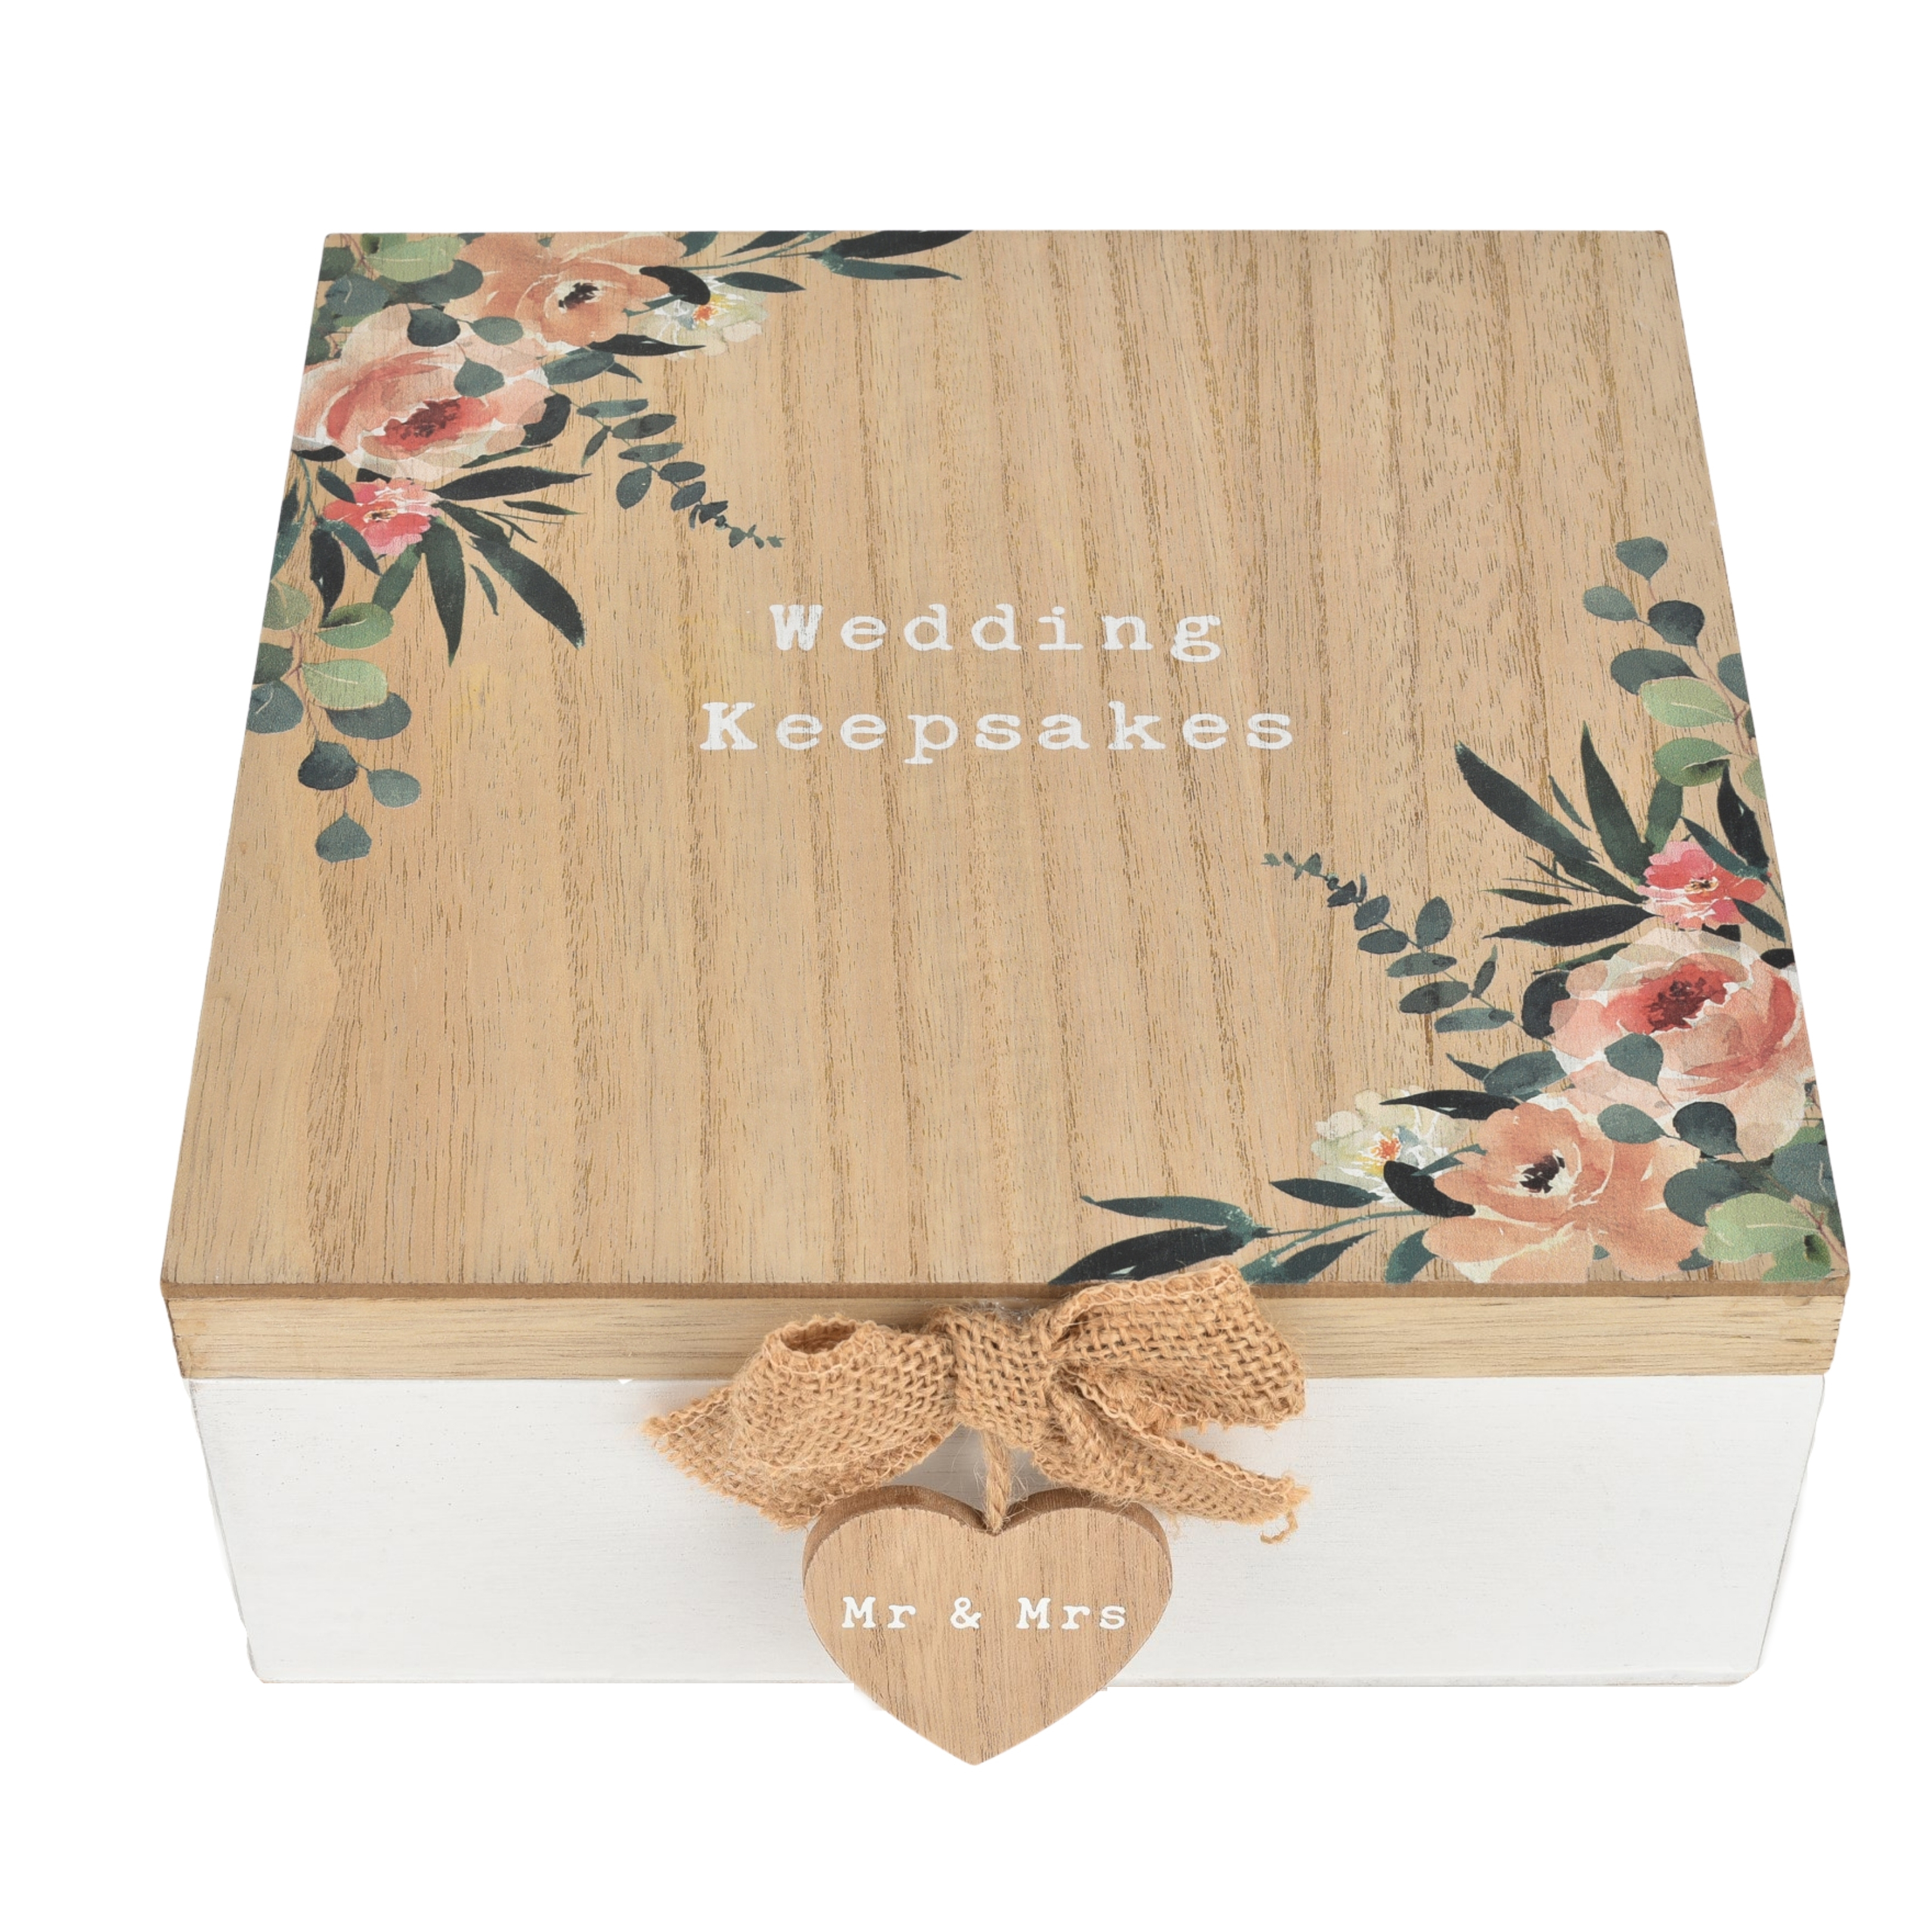 Widdop Love Story Floral Rustic Wedding Keepsakes Box